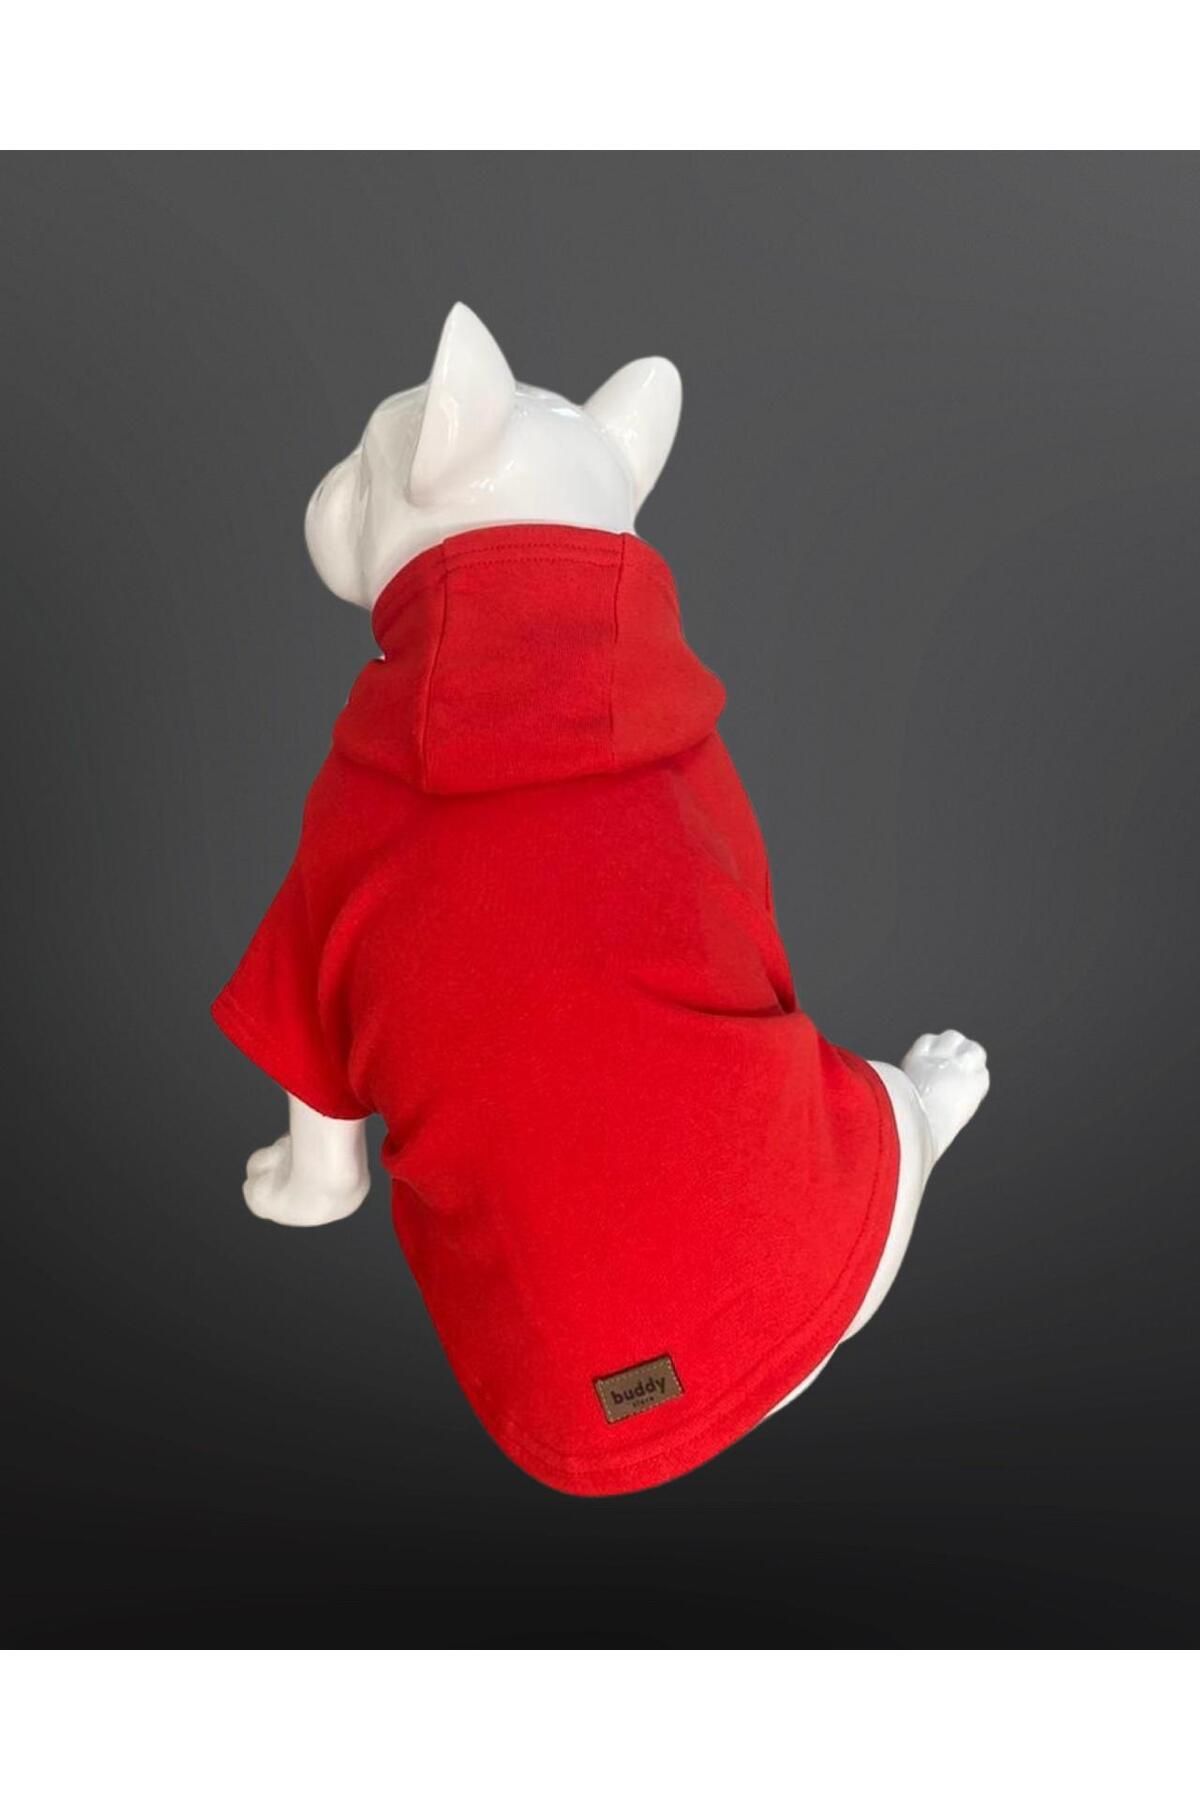 Buddy Store Kedi & Köpek Kıyafeti Sweatshirt - Baskısız Kırmızı Sweatshirt - Xl Beden